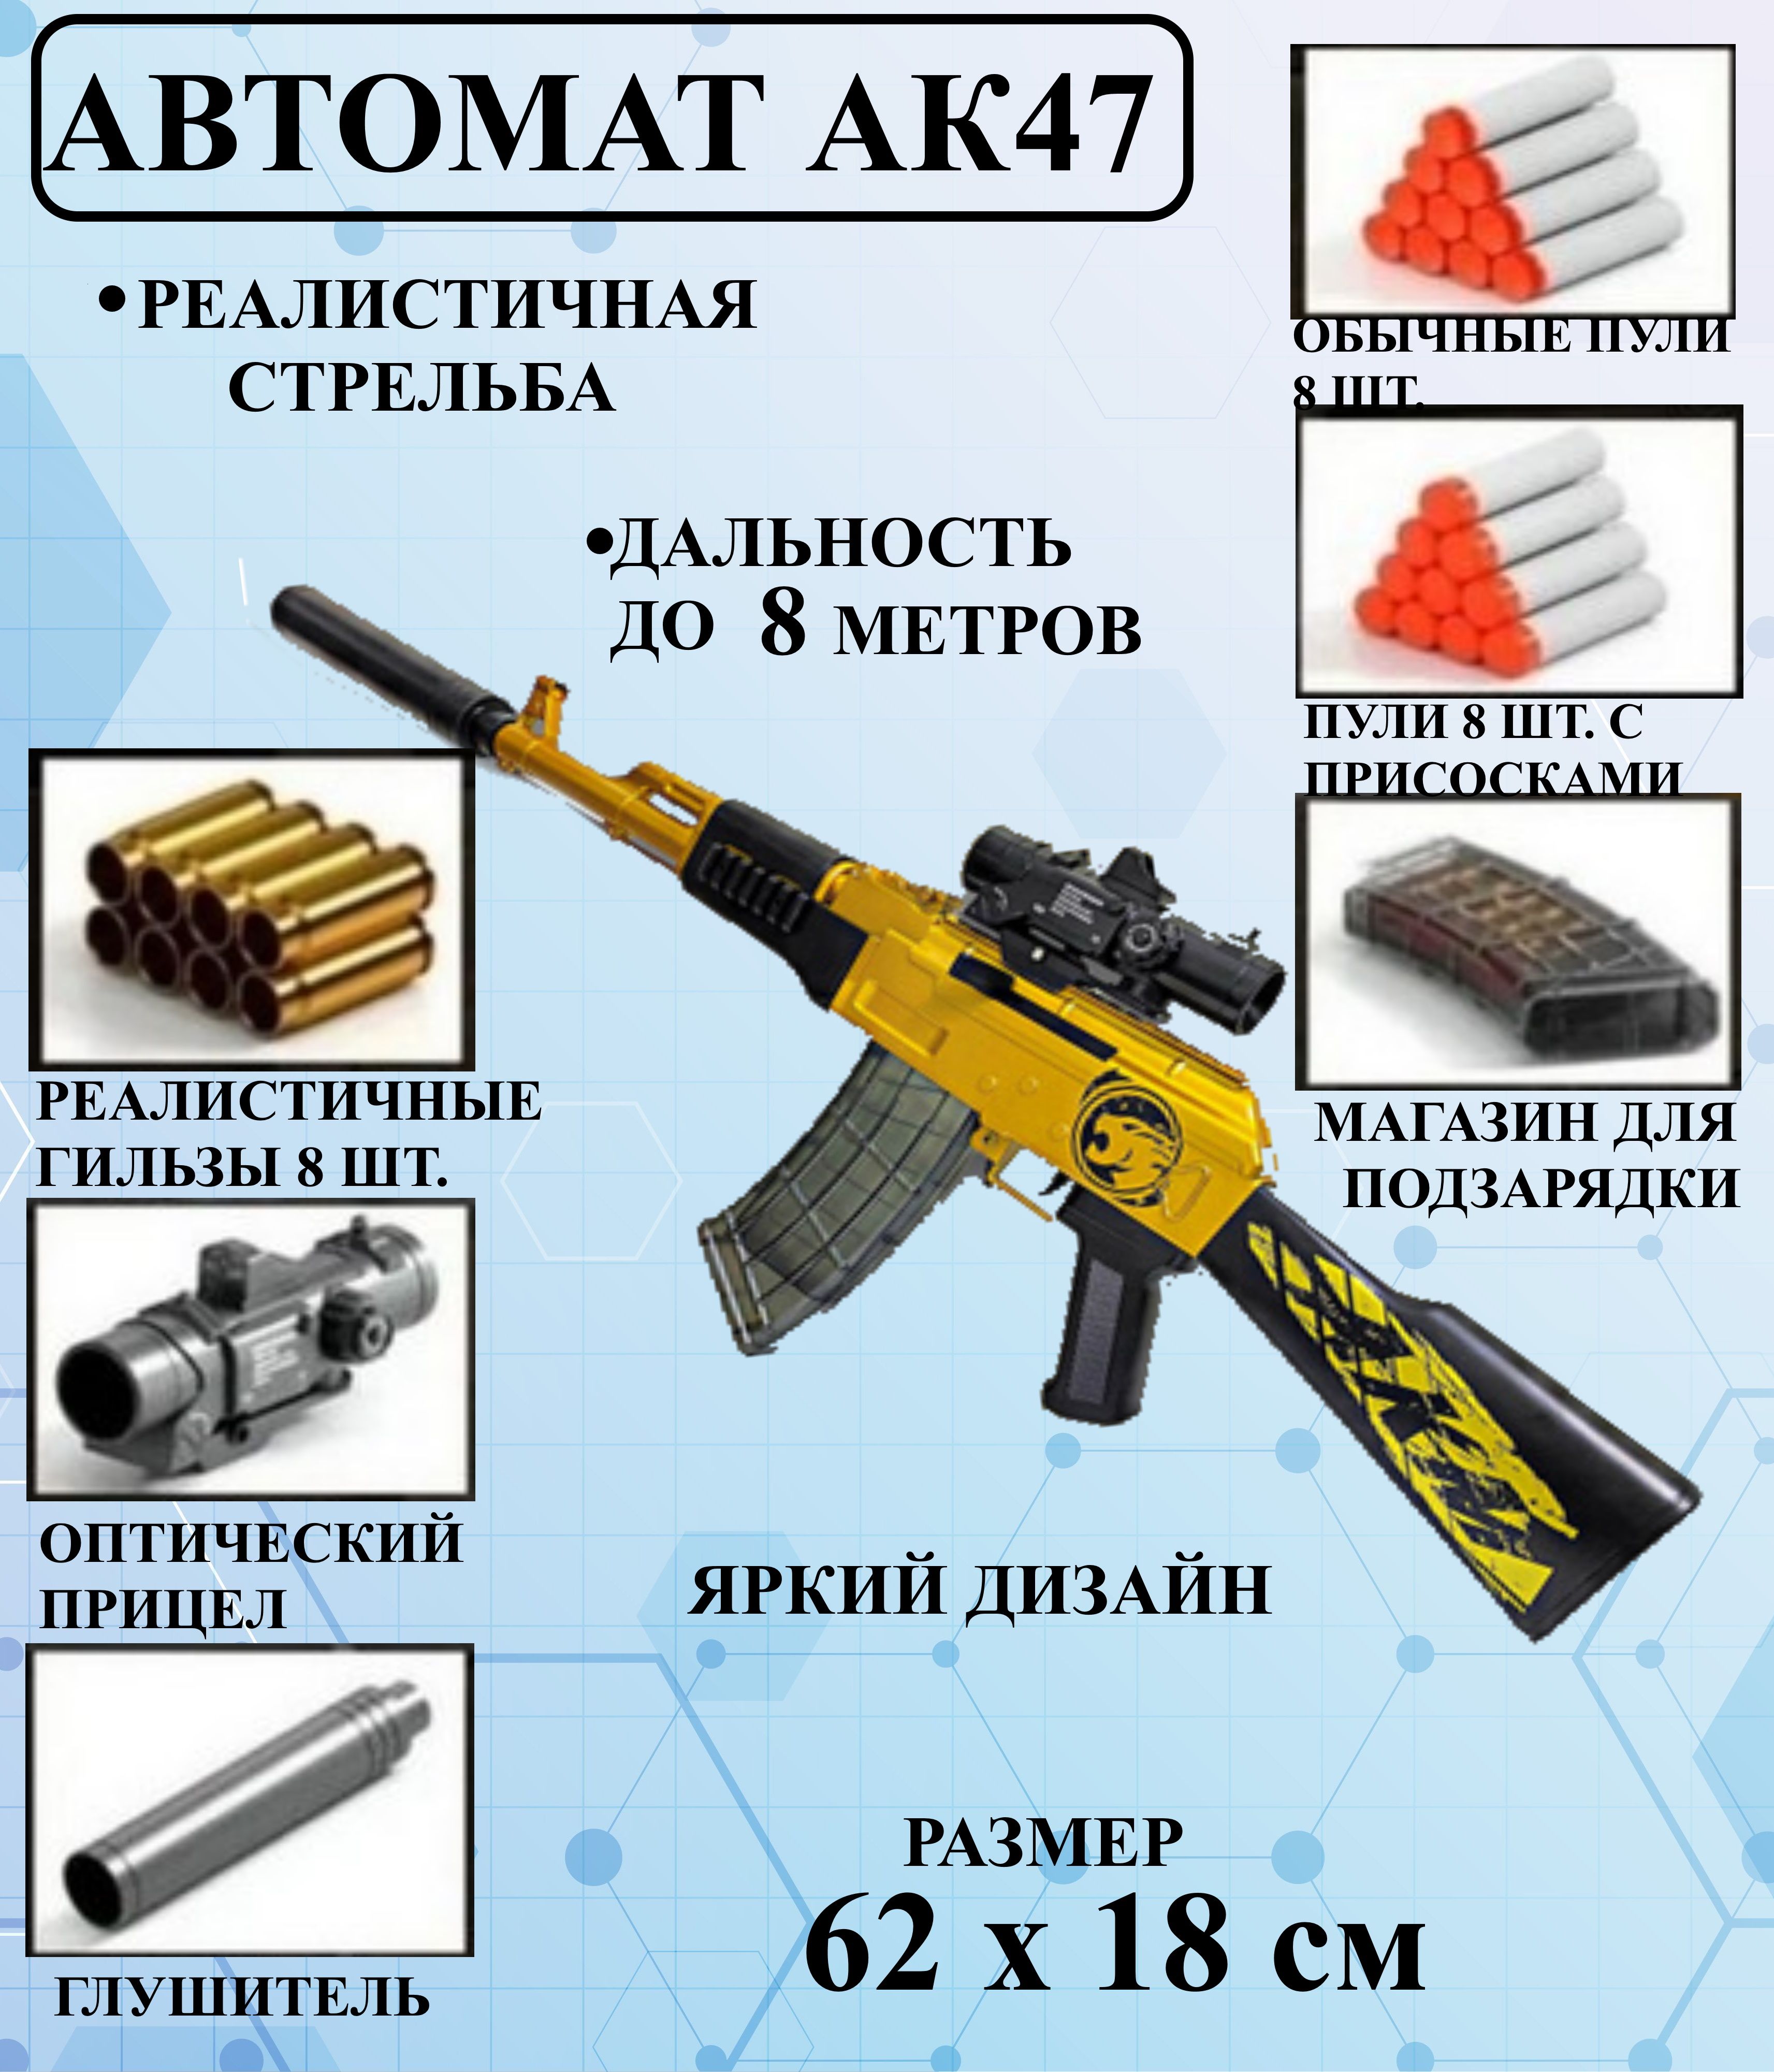 Детский автоматИгроНика АК 47 желтый, игрушечный пневматический бластер пистолет пневматический borner tt x кал 4 5 мм 3 дж корп пластик до 120 м с